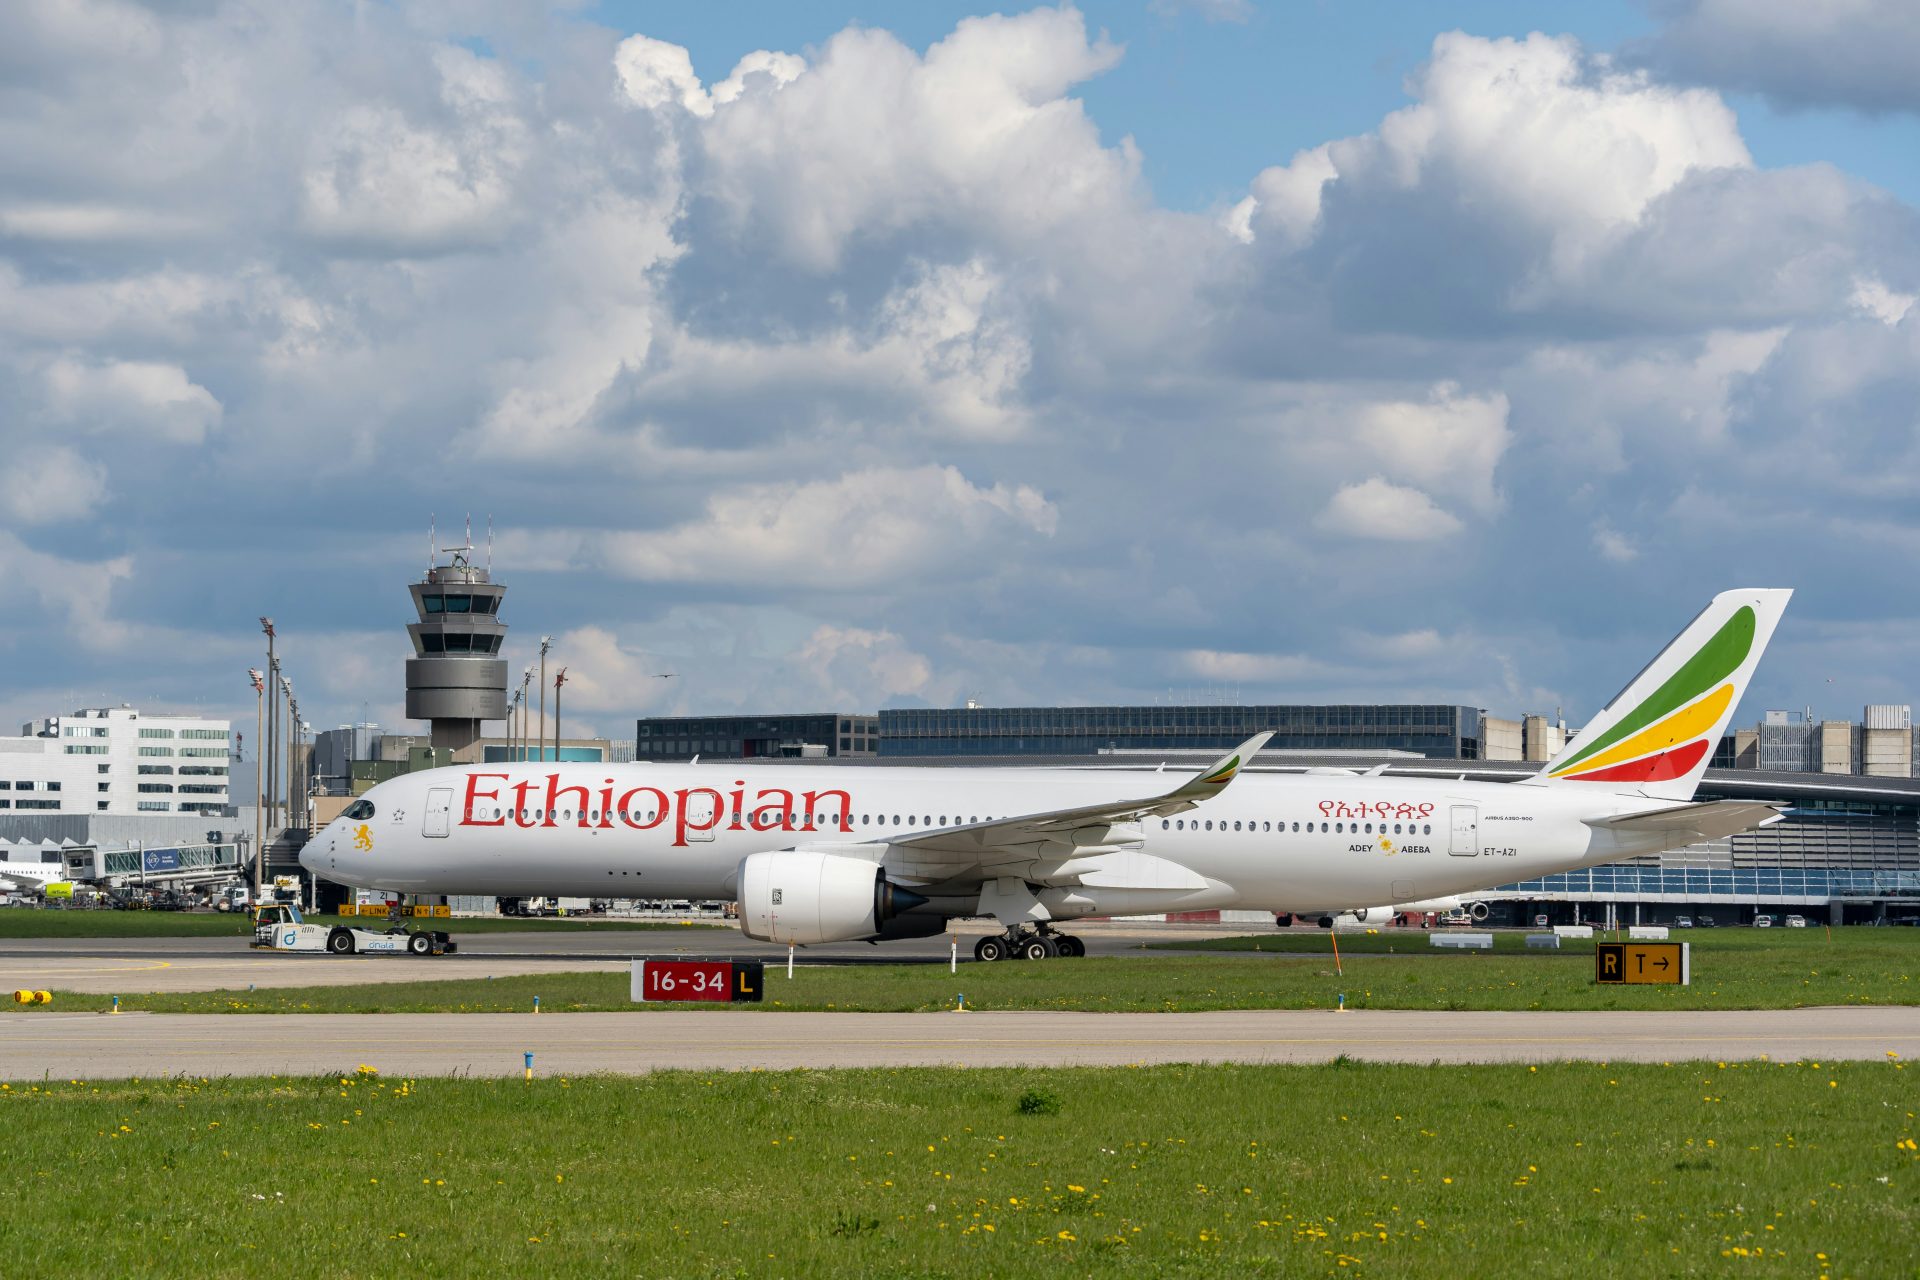 8. Ethiopian Airlines